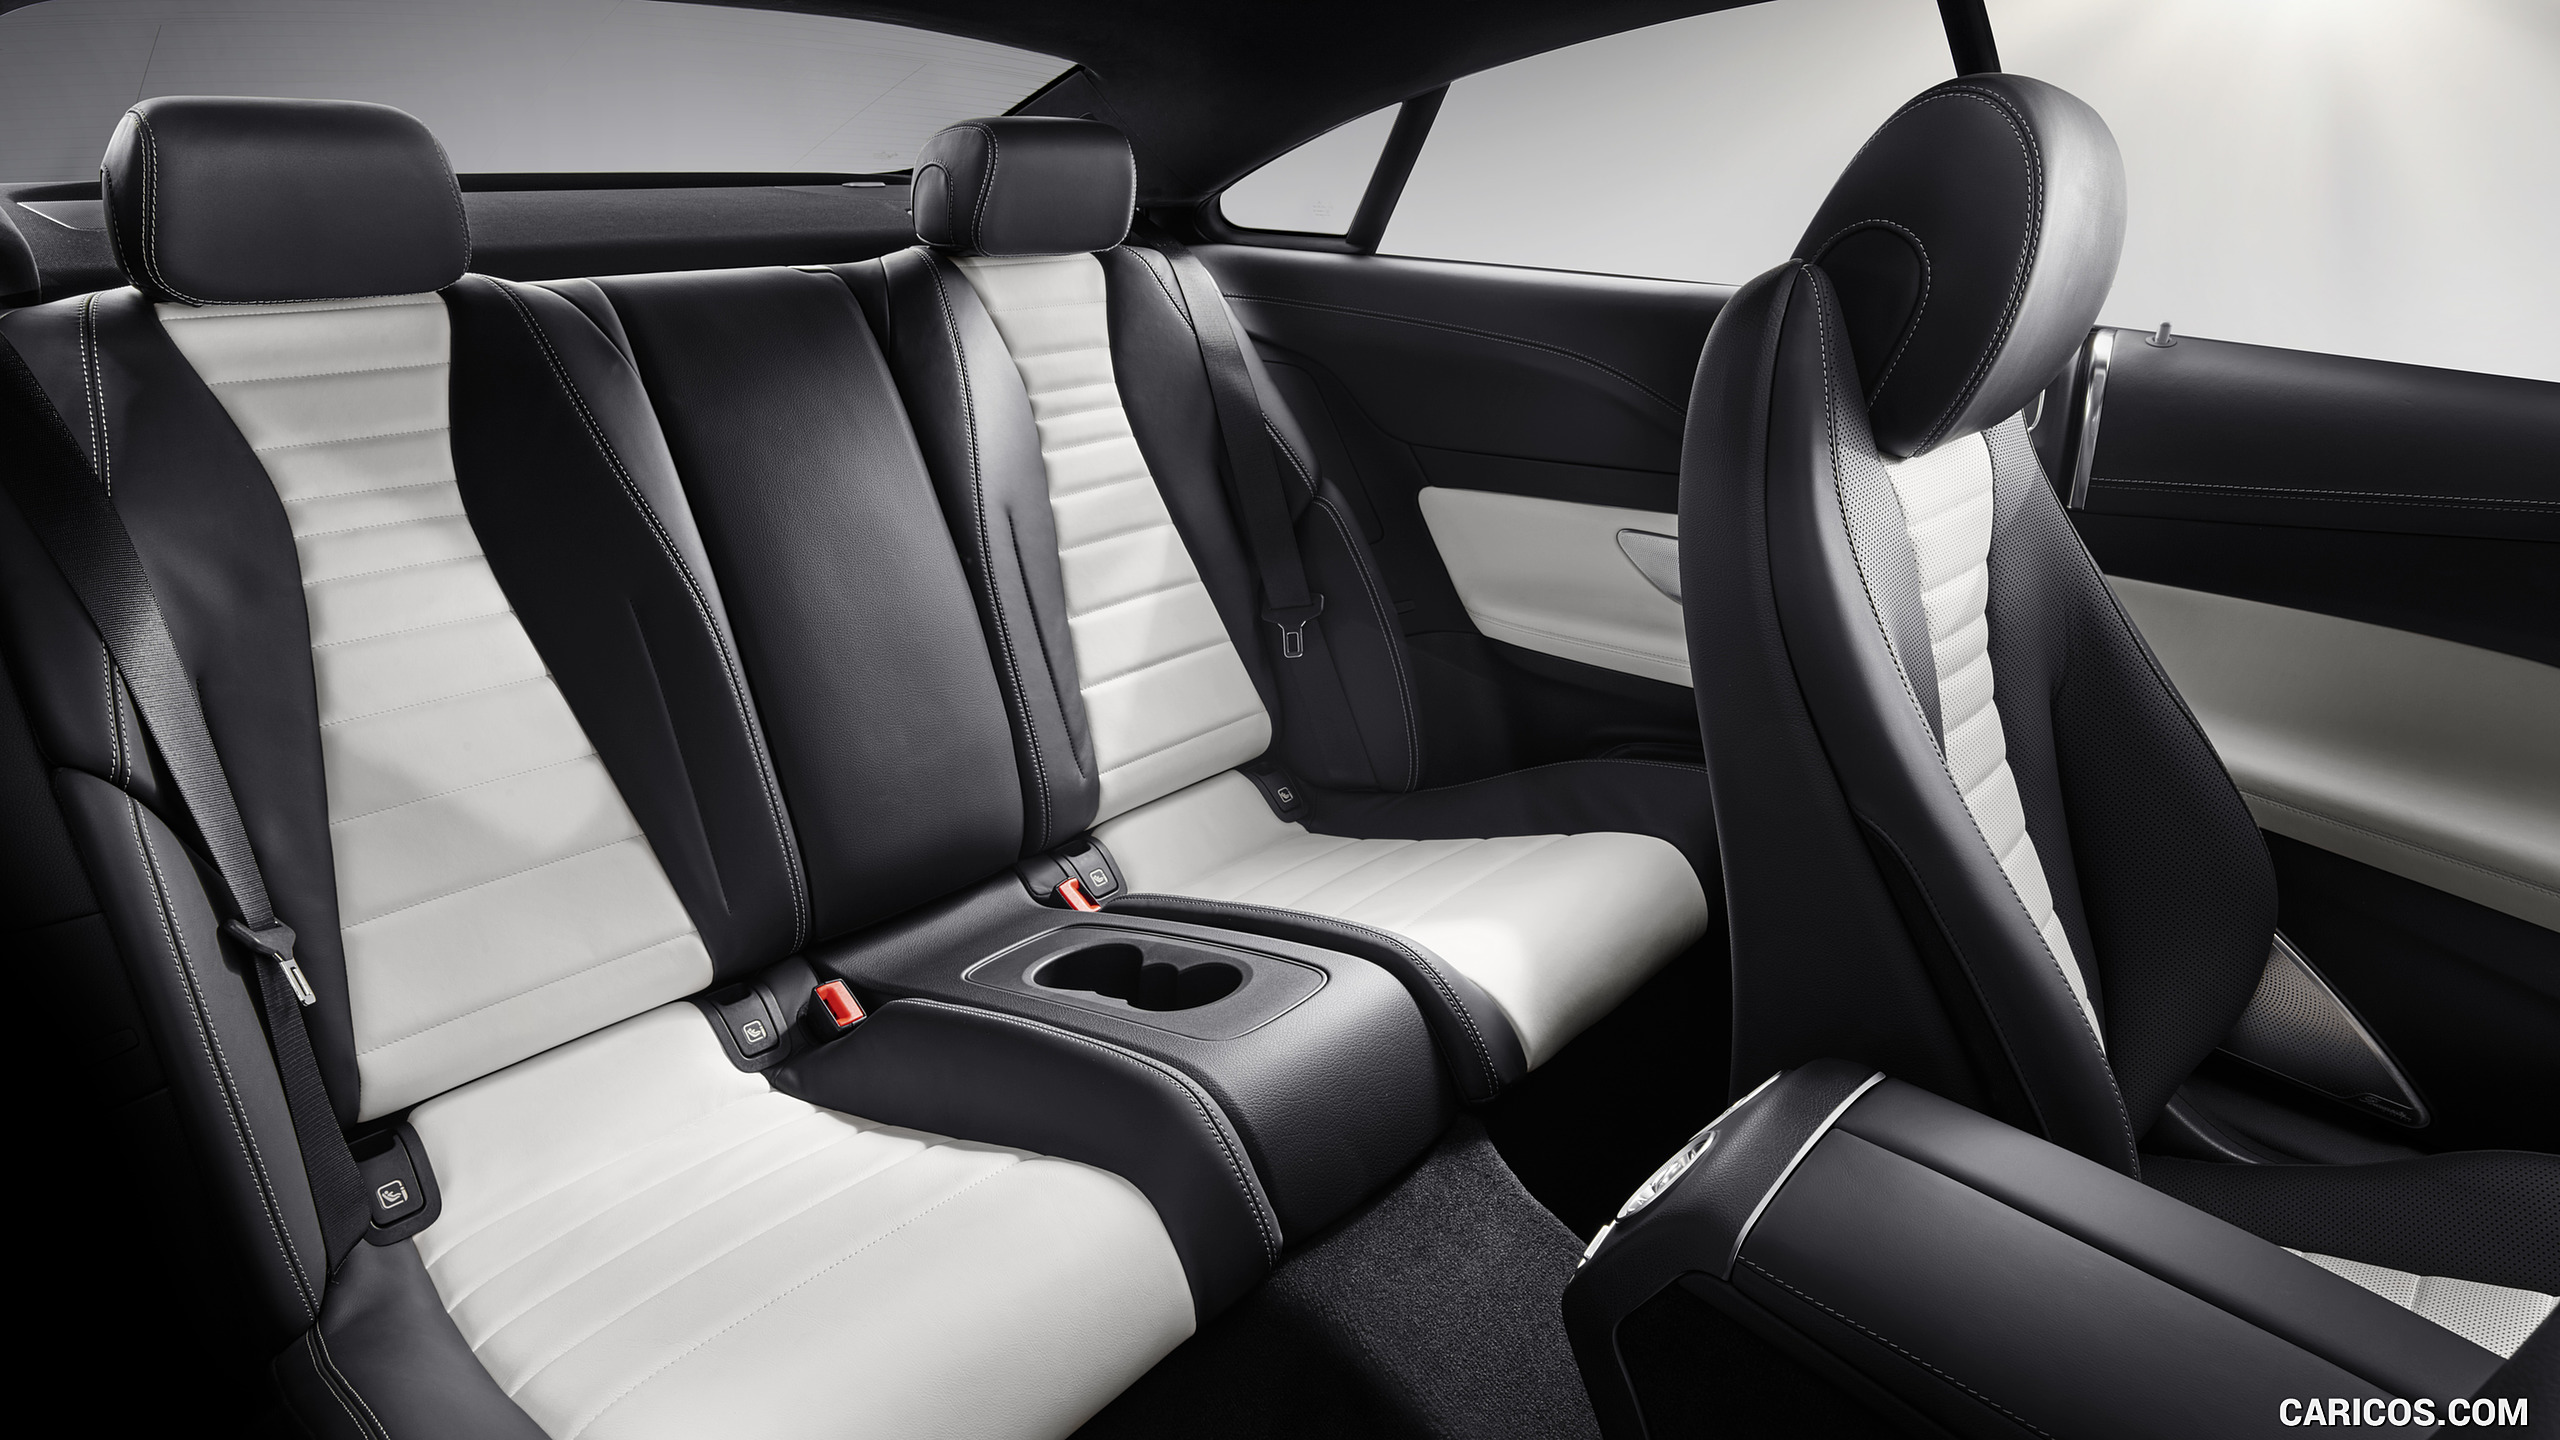 2018 Mercedes-Benz E-Class Coupe - Interior, Rear Seats, #70 of 365